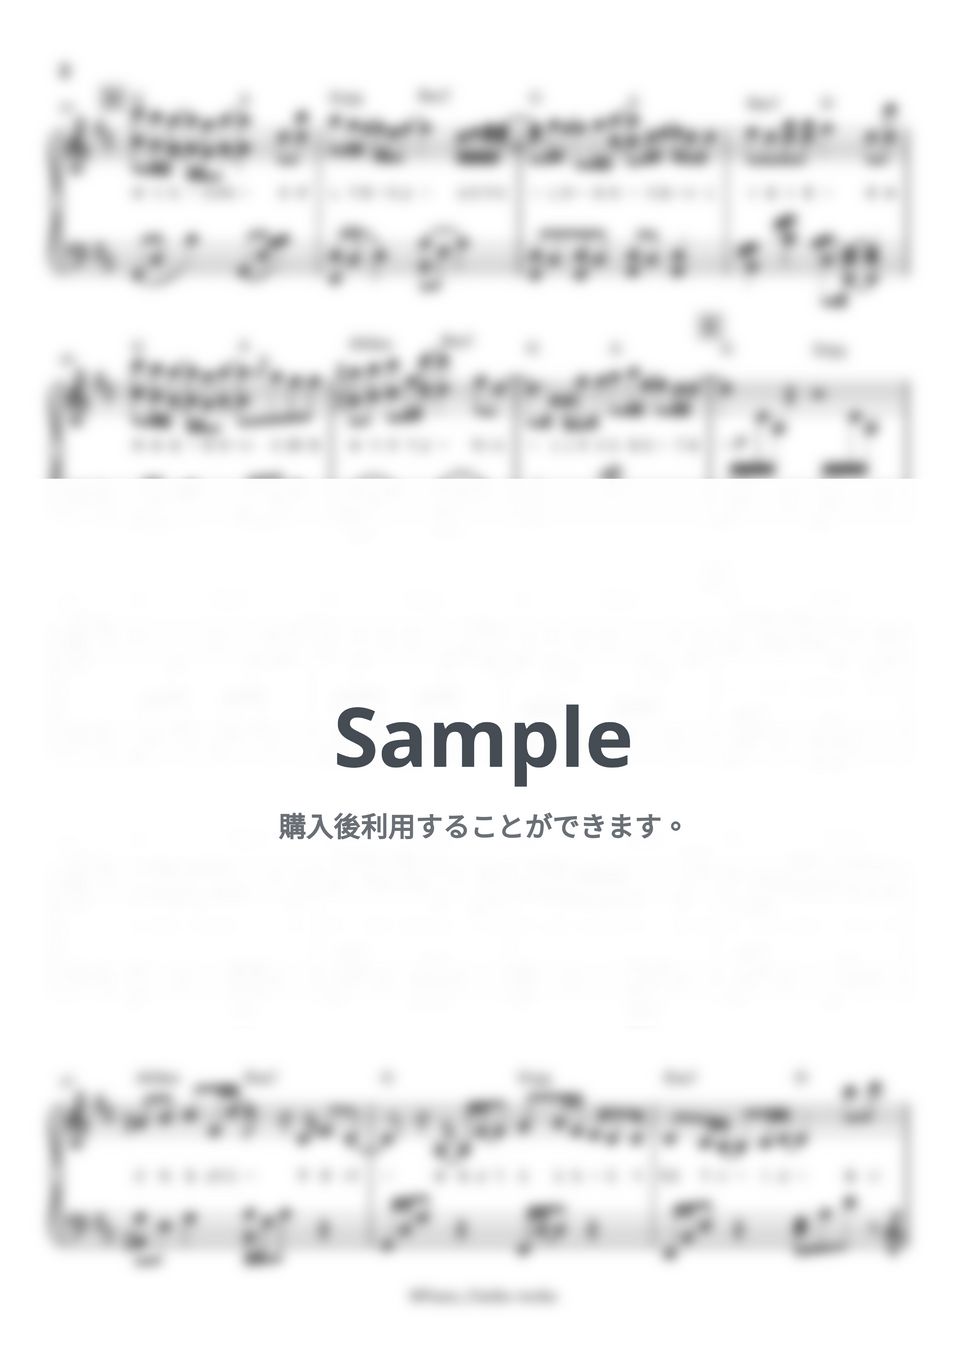 Novelbright - 雪の音 by Pianoうーみho